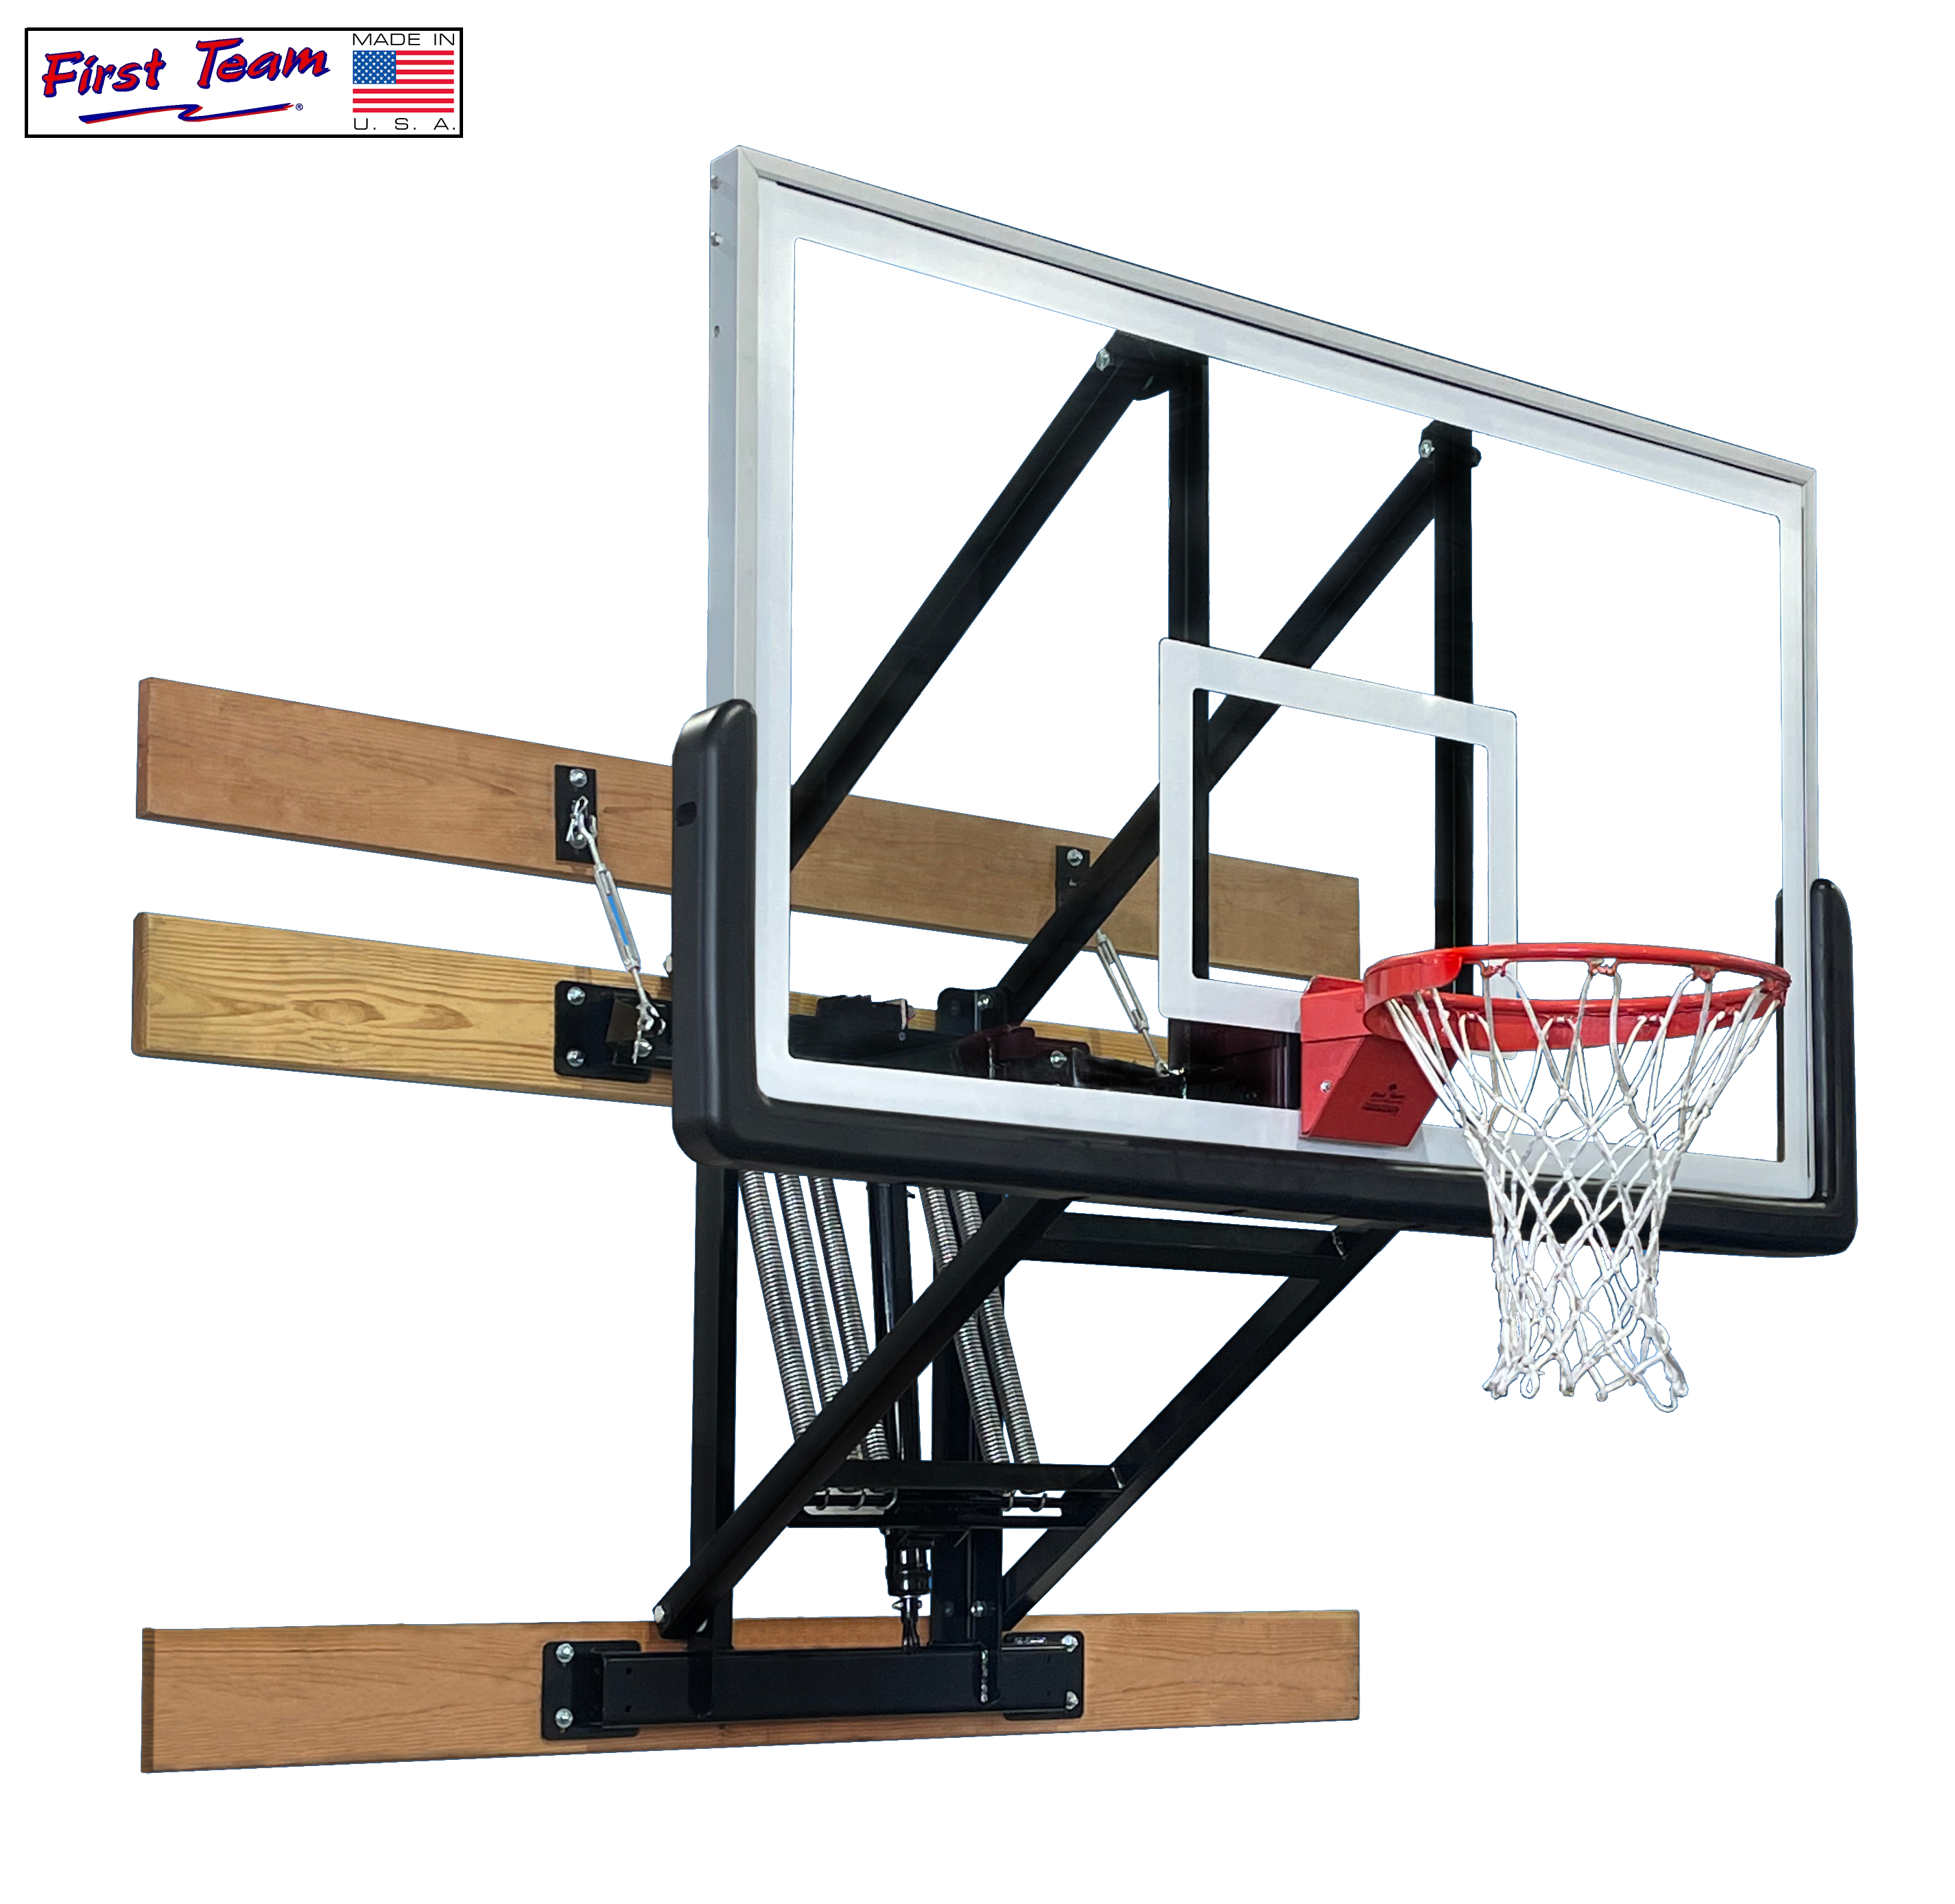 PROformance Wall Mount Basketball Hoop